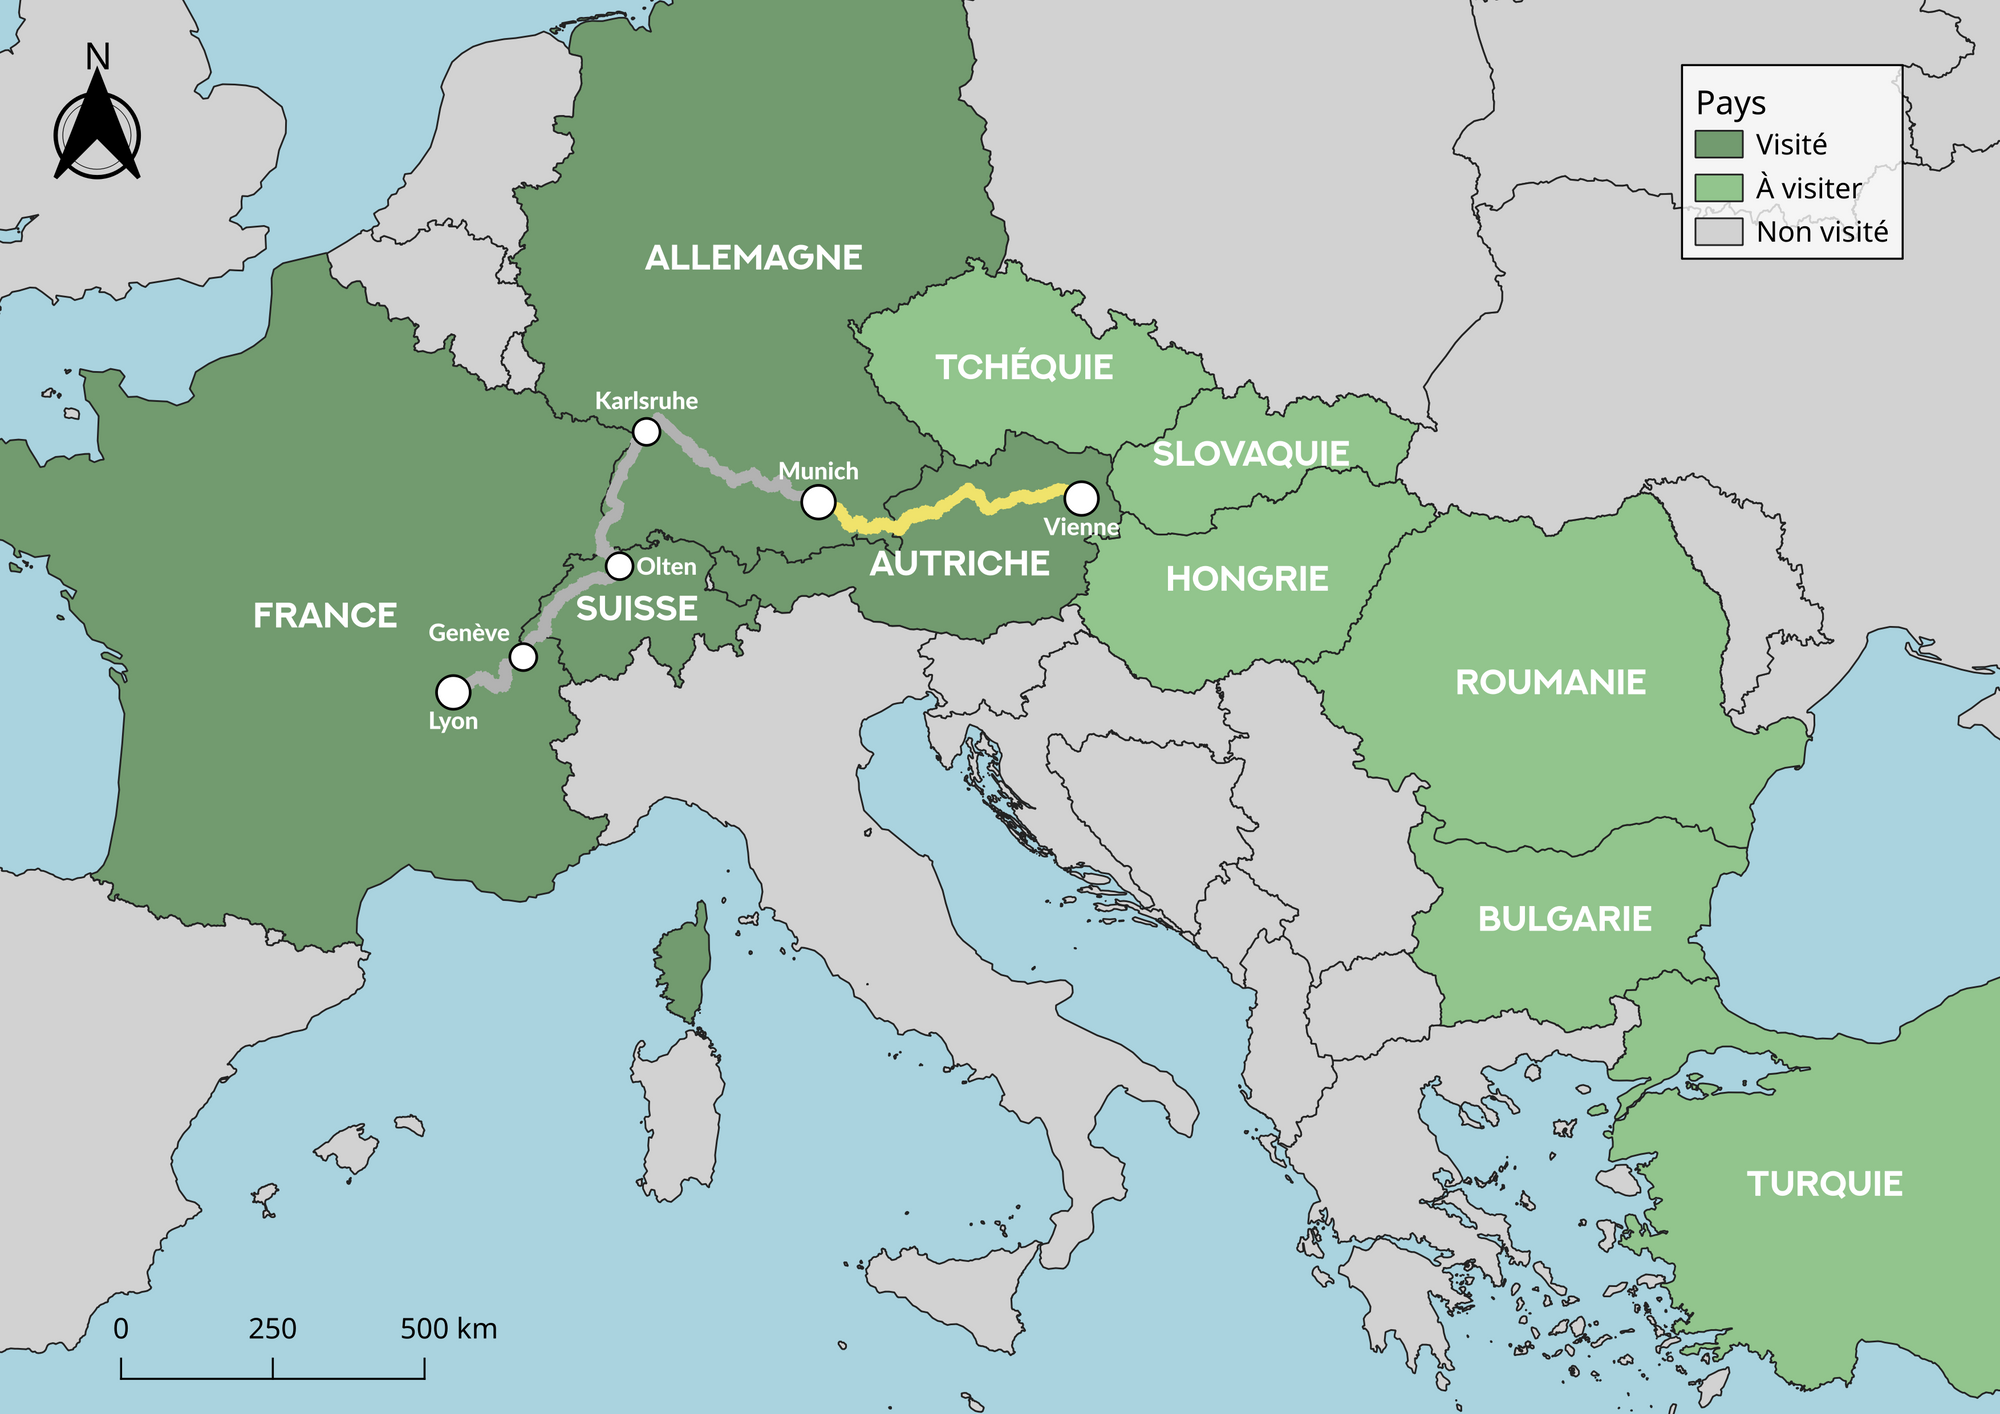 Carte de l'Europe indiquant le trajet en train : Munich - Vienne